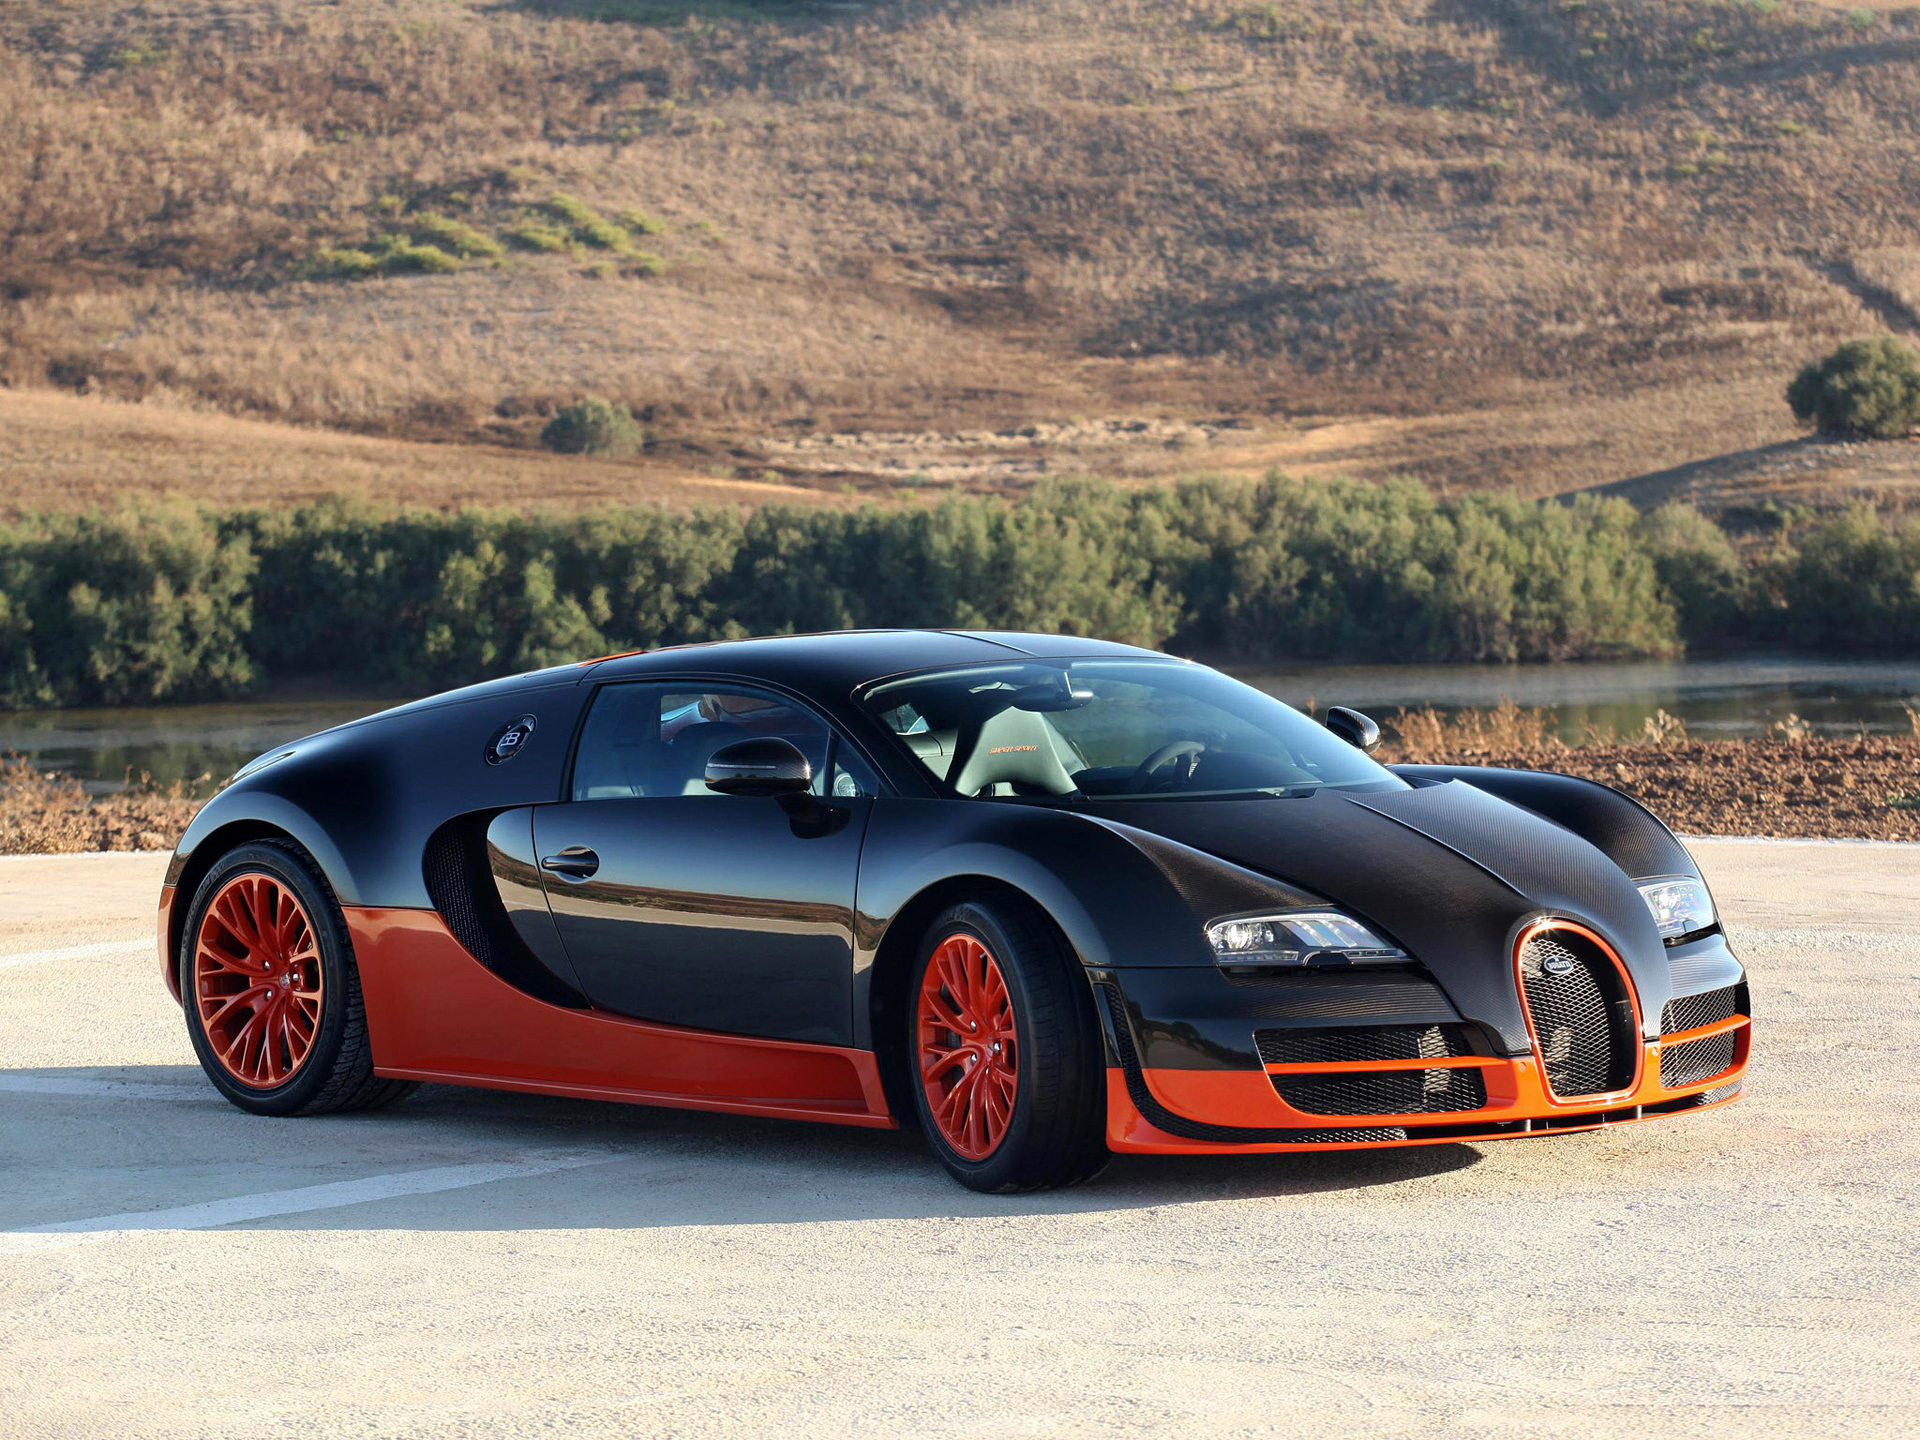 Hãy tải ngay hình nền Bugatti Veyron màu cam 1920x1440 để cảm nhận sự nổi bật và cá tính của chiếc siêu xe này. Với độ phân giải cao, bạn sẽ ngỡ ngàng trước độ chi tiết và sắc nét của từng đường nét trên xe. Chắc chắn đây sẽ là một lựa chọn hoàn hảo cho những ai yêu thích tốc độ và sự đam mê xe hơi.